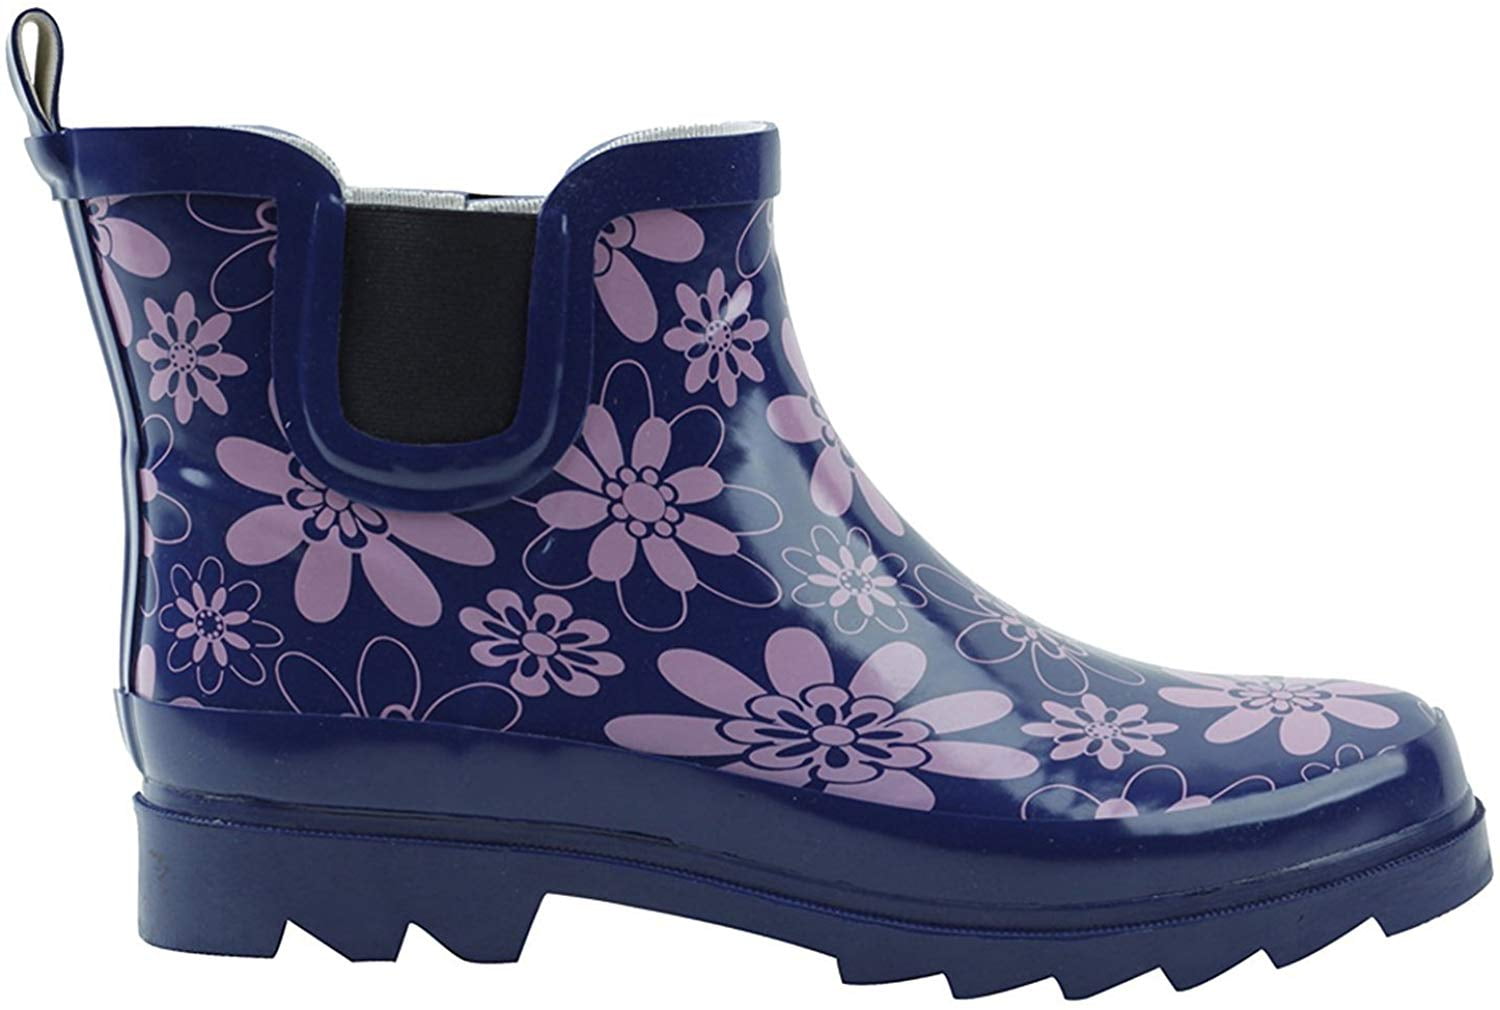 Buy > wellington boots gardening > in stock